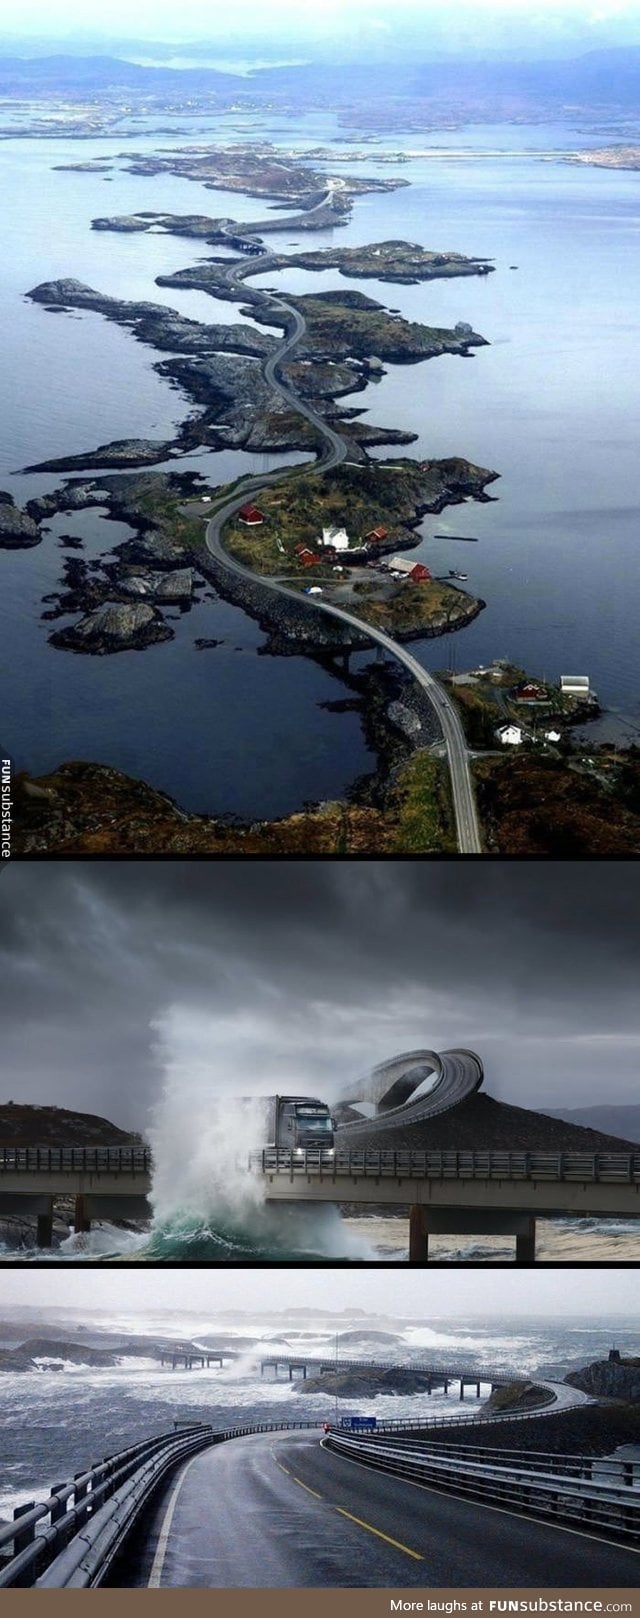 The Atlantic Ocean Road in Norway